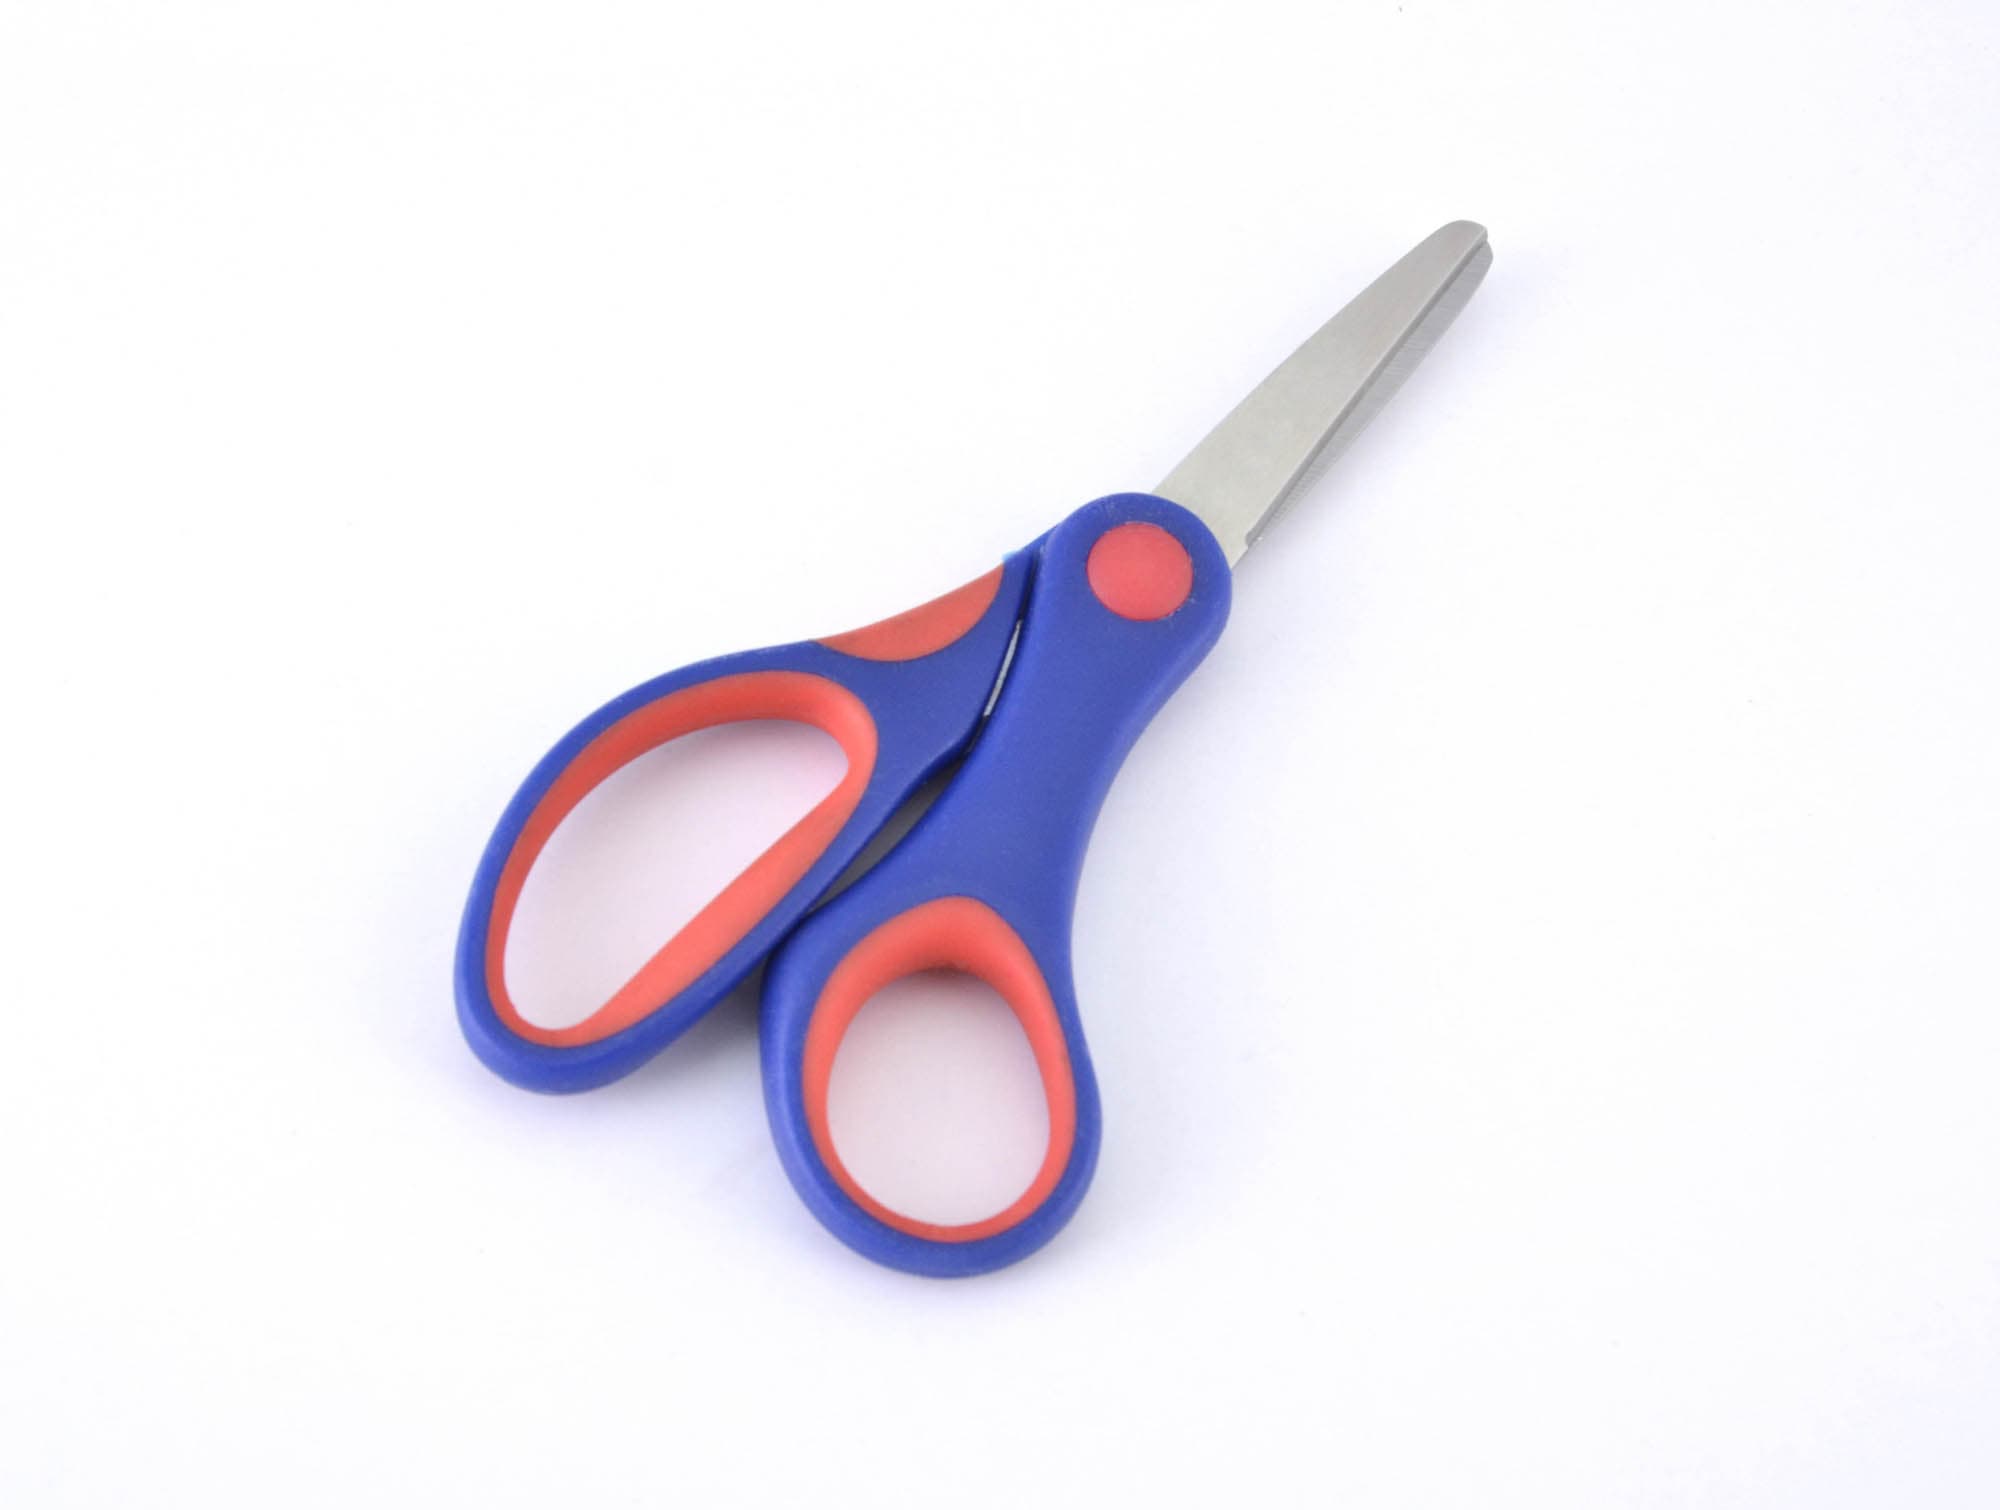 stainless steel household scissors_office scissors